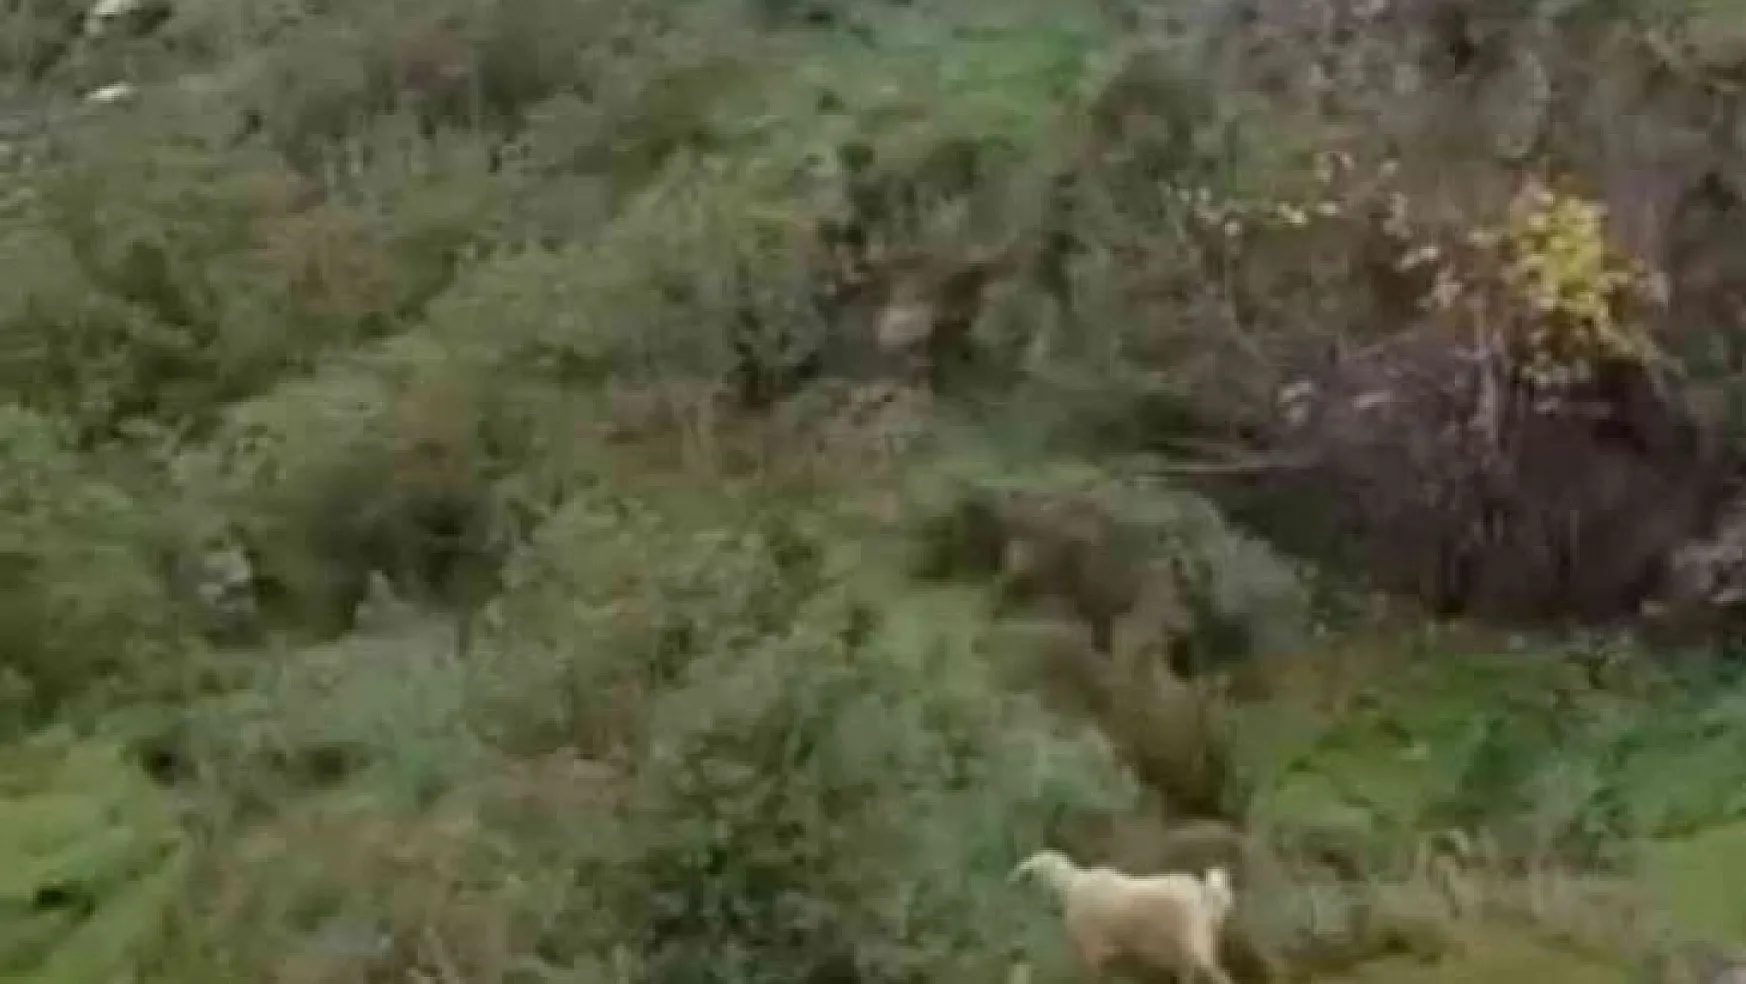 Uçurumda mahsur kalan keçiyi itfaiye kurtardı